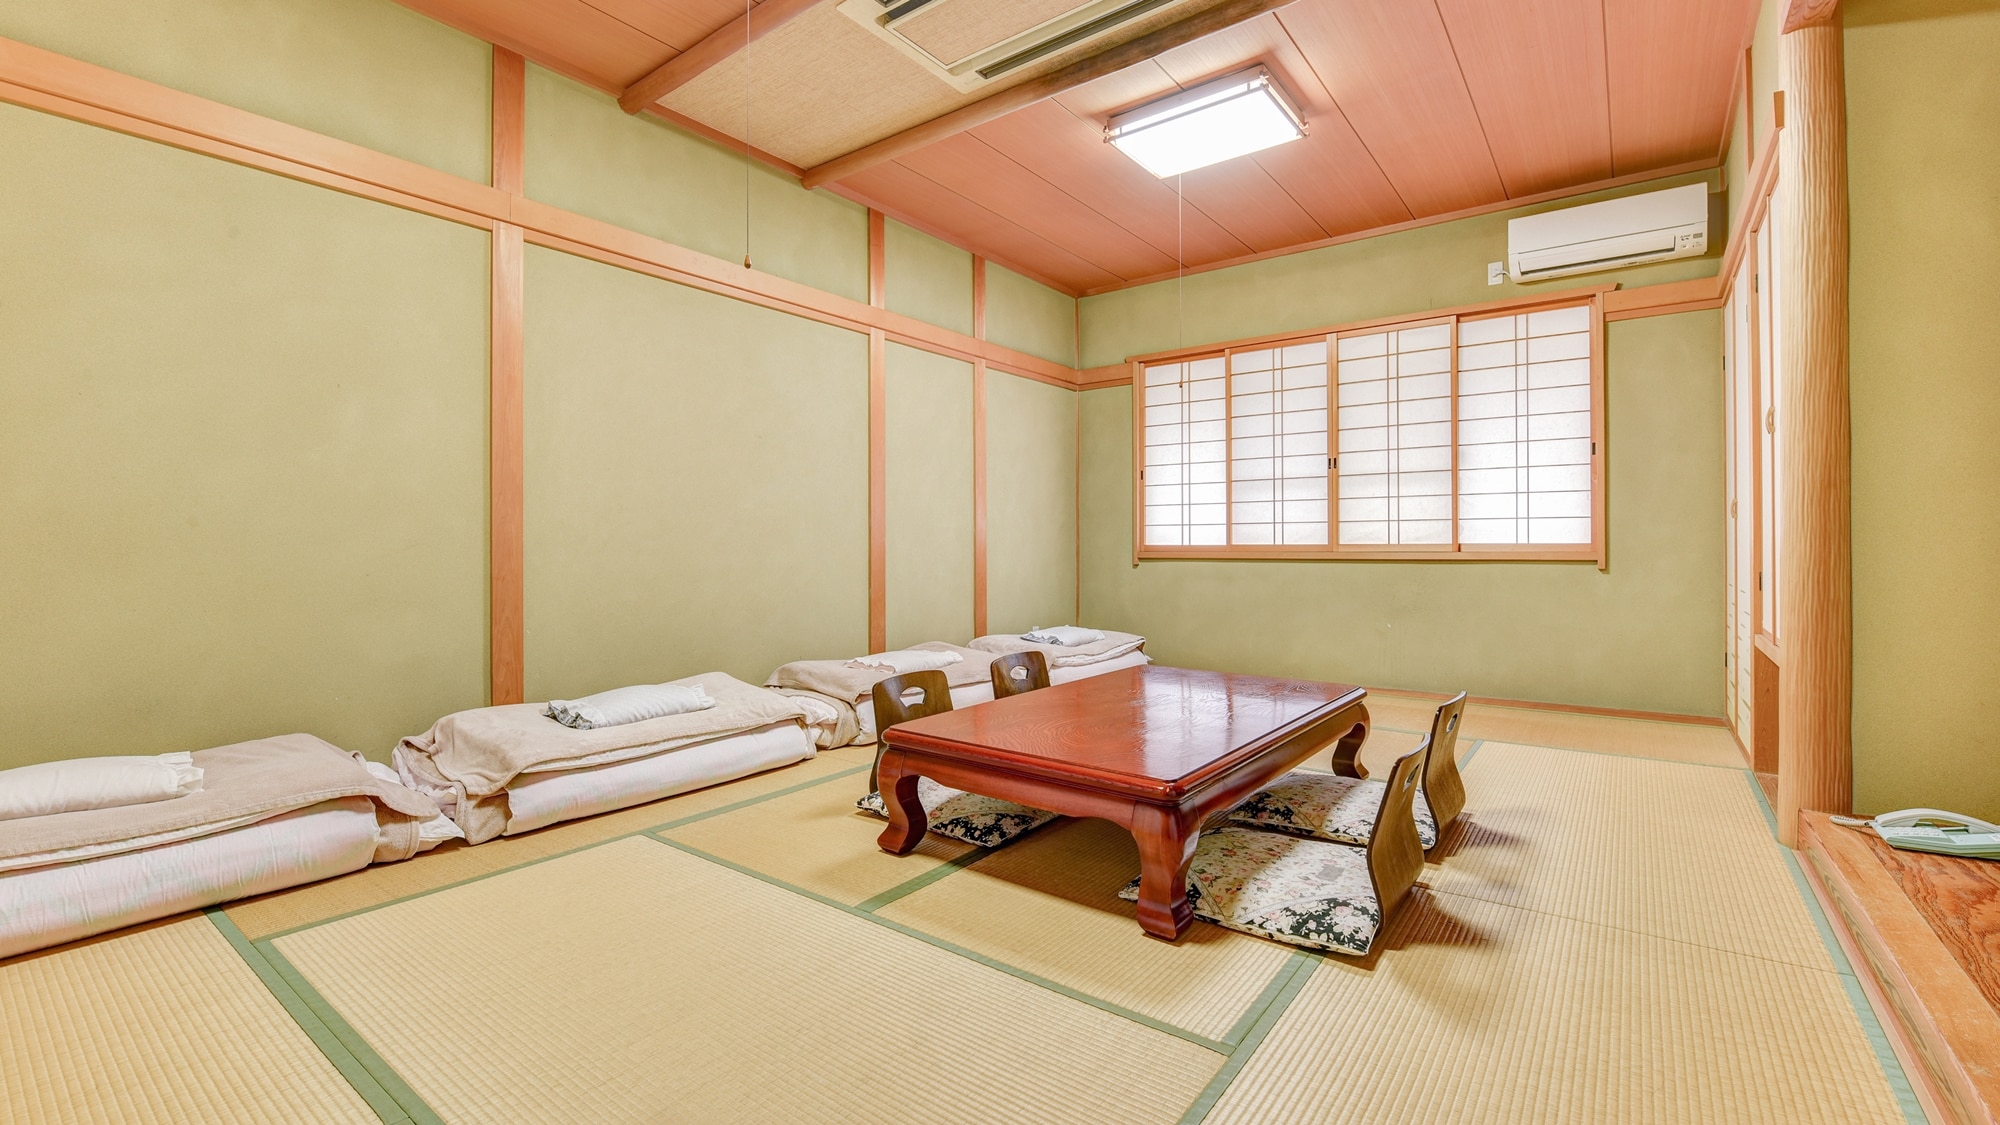 * 日式客房 12 張榻榻米 / 純日式客房擁有優雅和寧靜的氛圍。請在家庭或團體中度過輕鬆的時光。